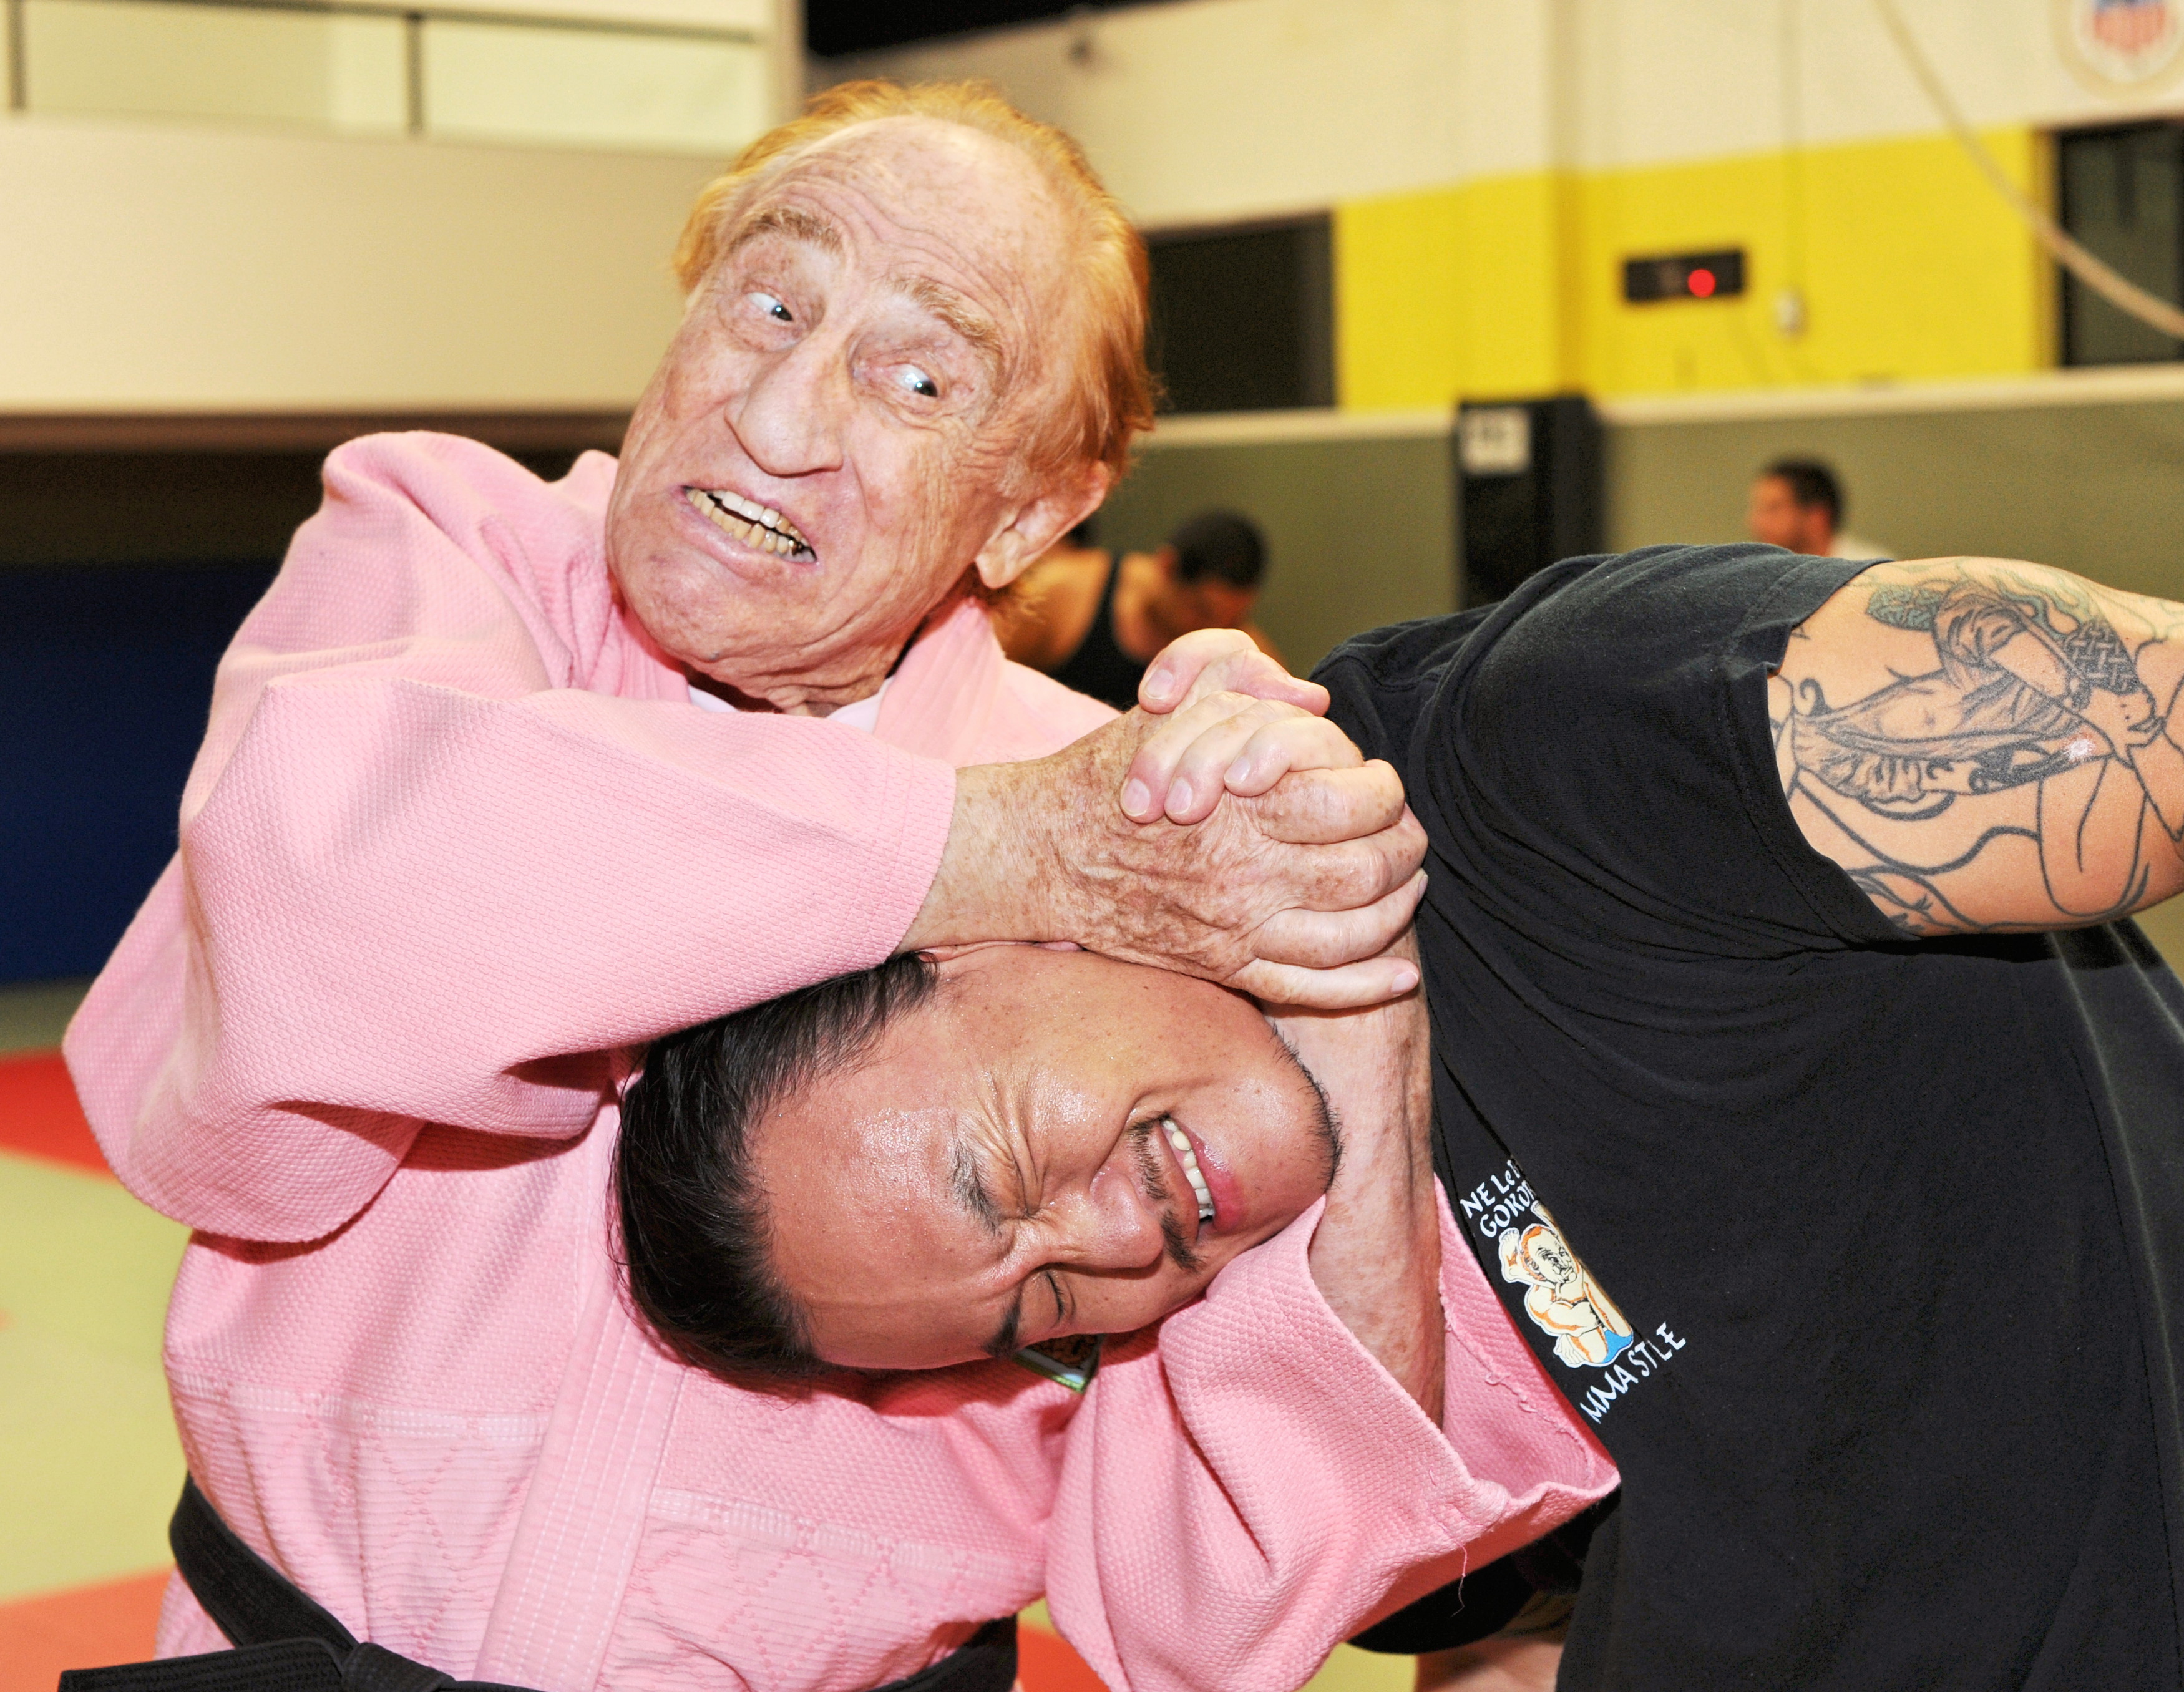 Legendary Judo Gene LeBell demonstrating neck lock and choke hold on Steve Kim at Hayastan